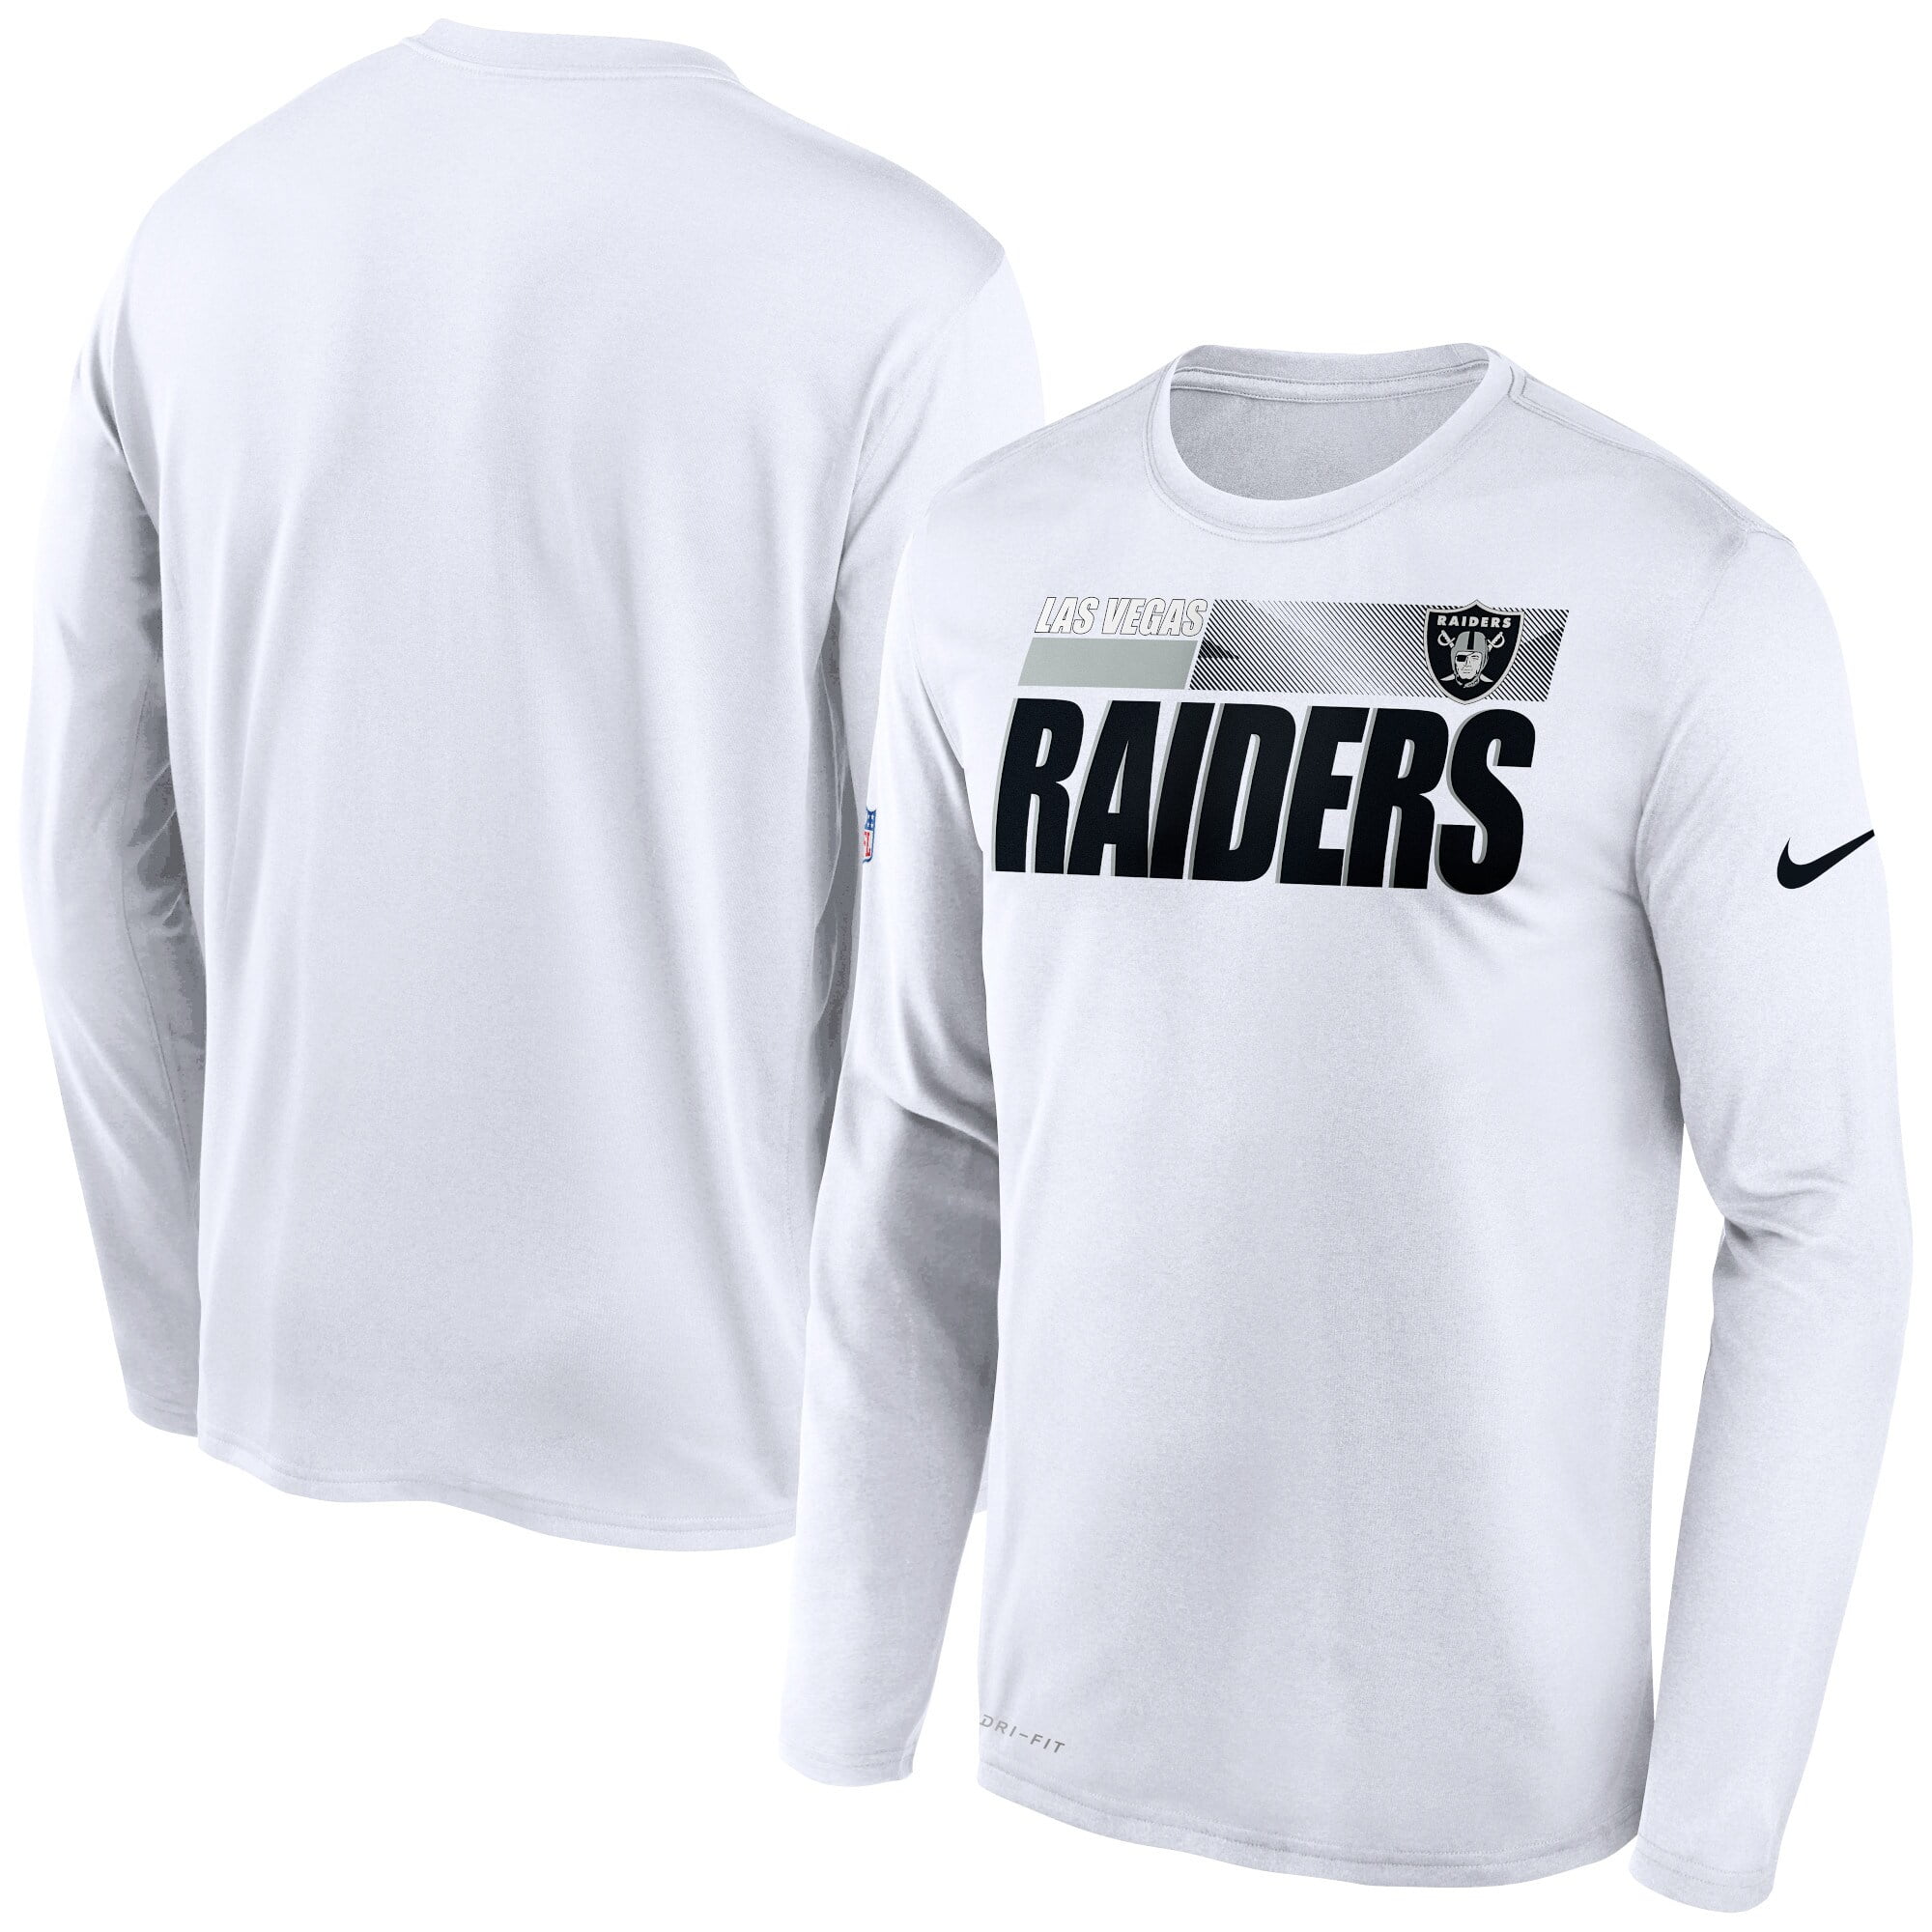 white raiders shirt